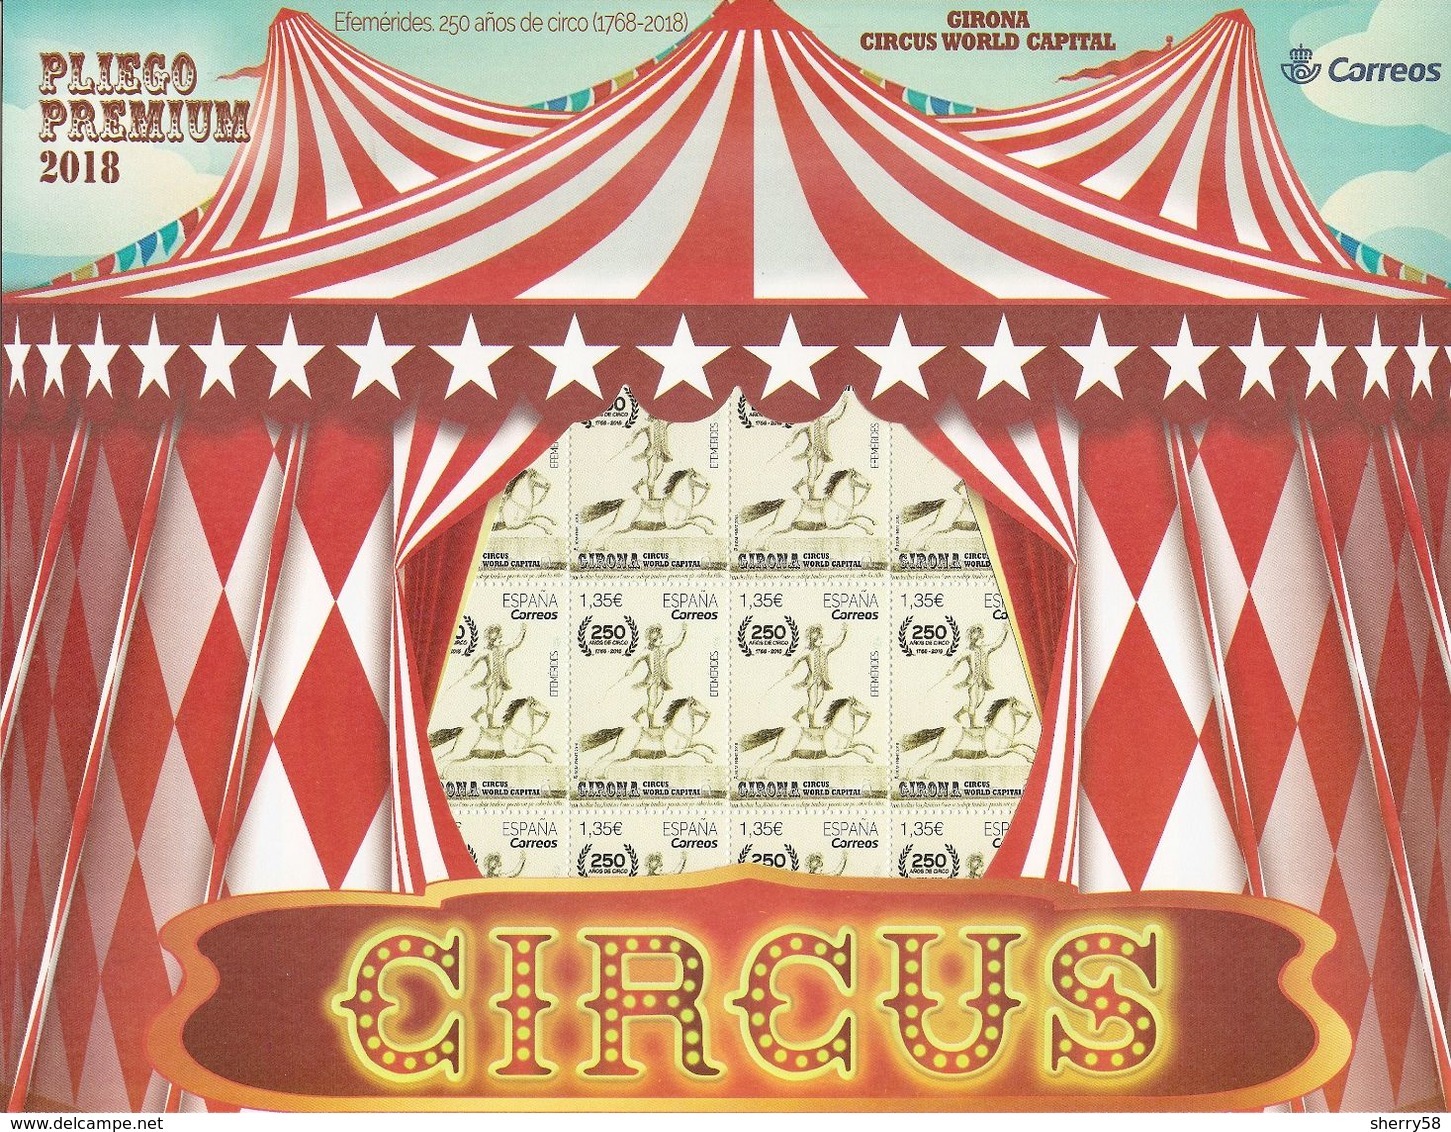 2018-ED. 5208 - EN PLIEGO PREMIUM  Efemérides. 250 Años De Circo (1768-2018) GIRONA CIRCUS WORLD CAPITAL-NUEVO - Full Sheets